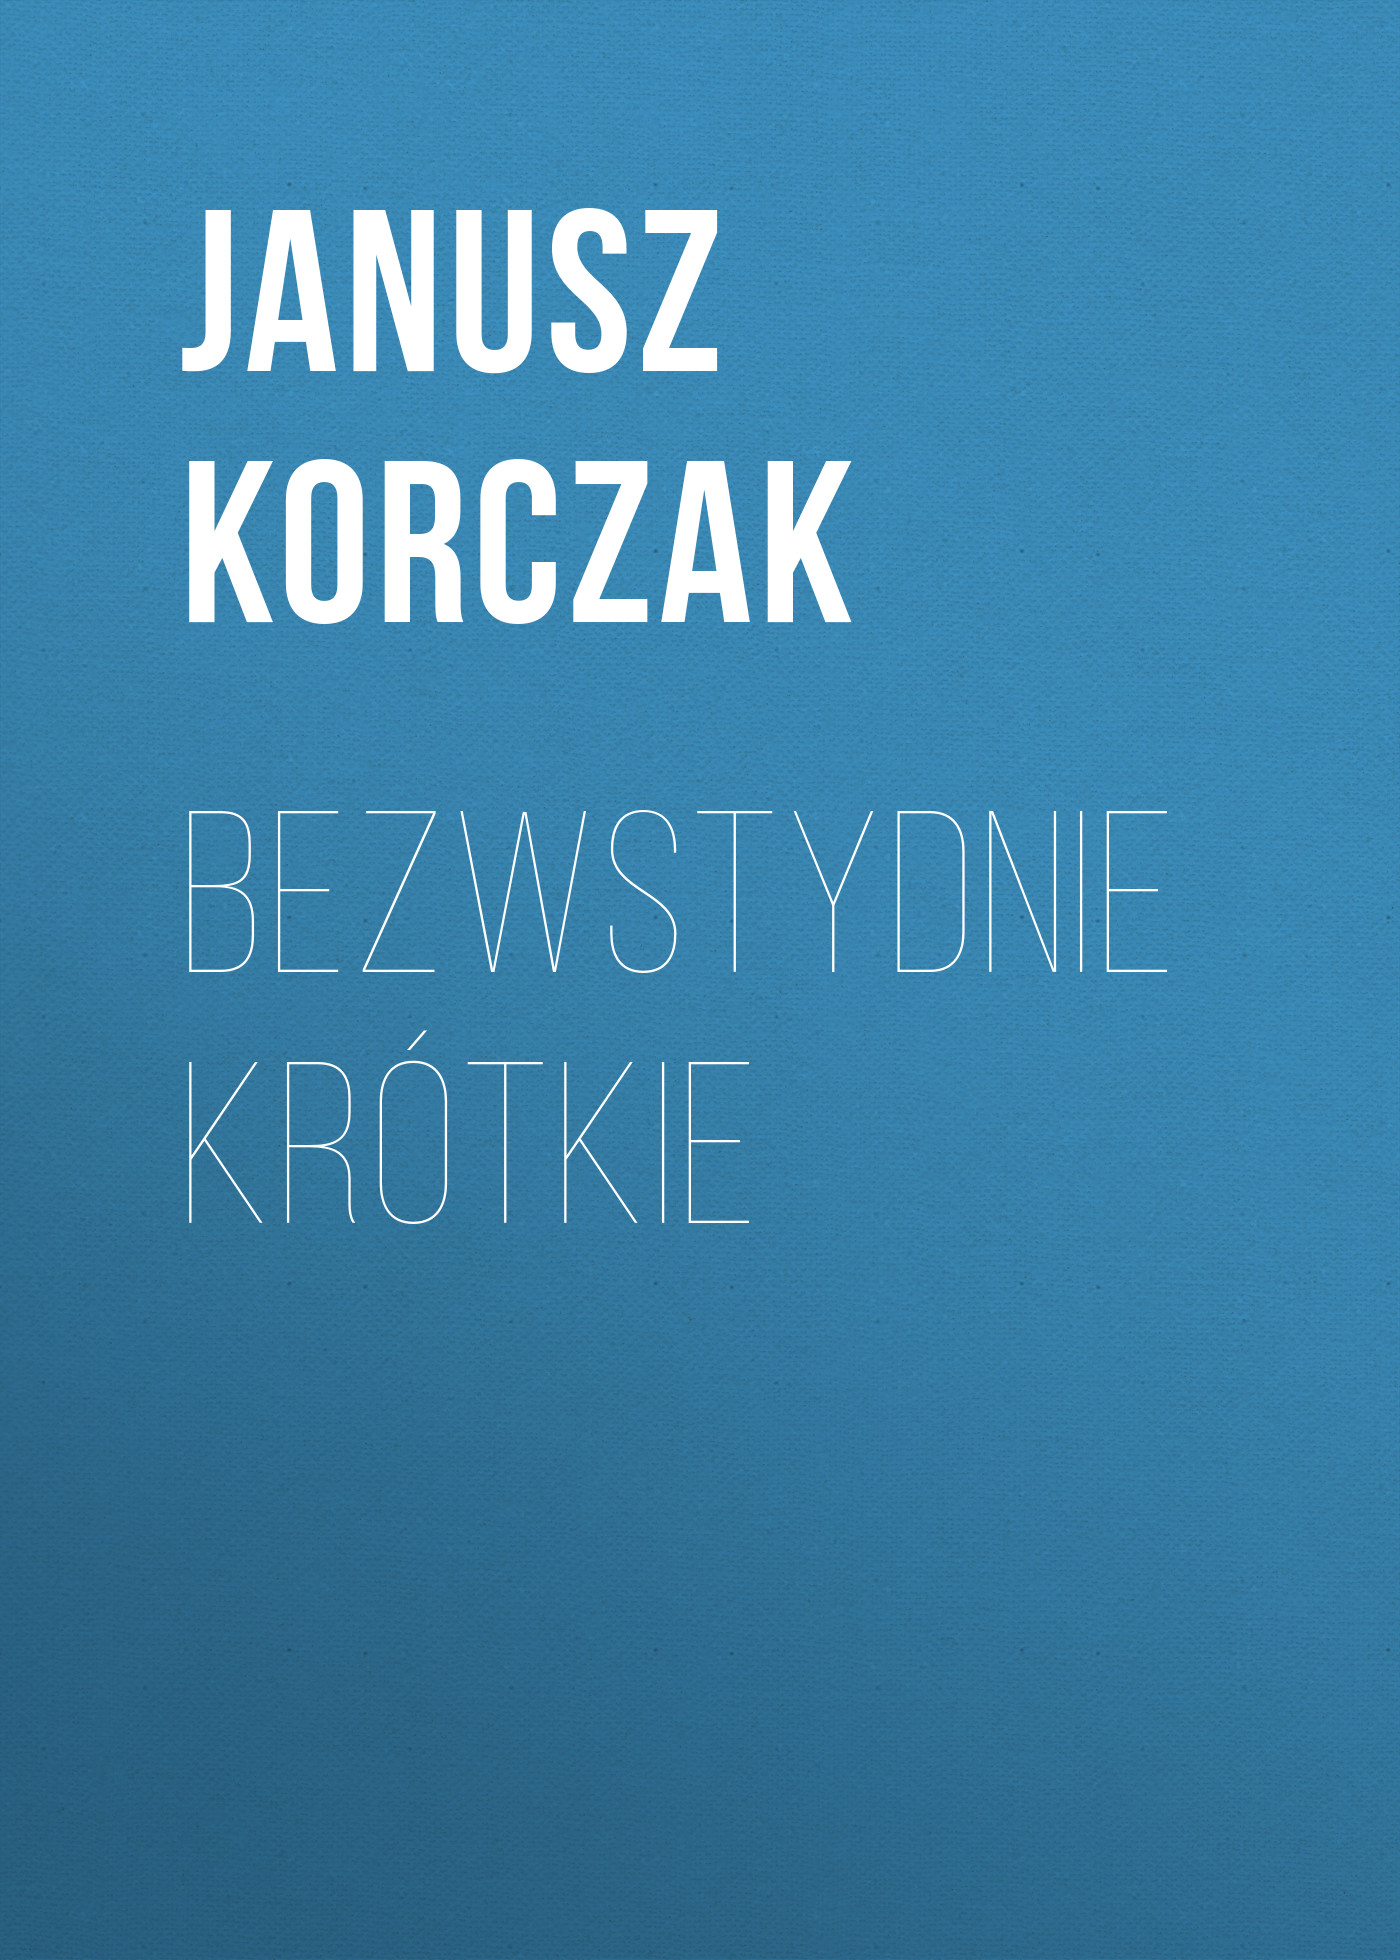 Скачать Bezwstydnie krótkie - Janusz Korczak